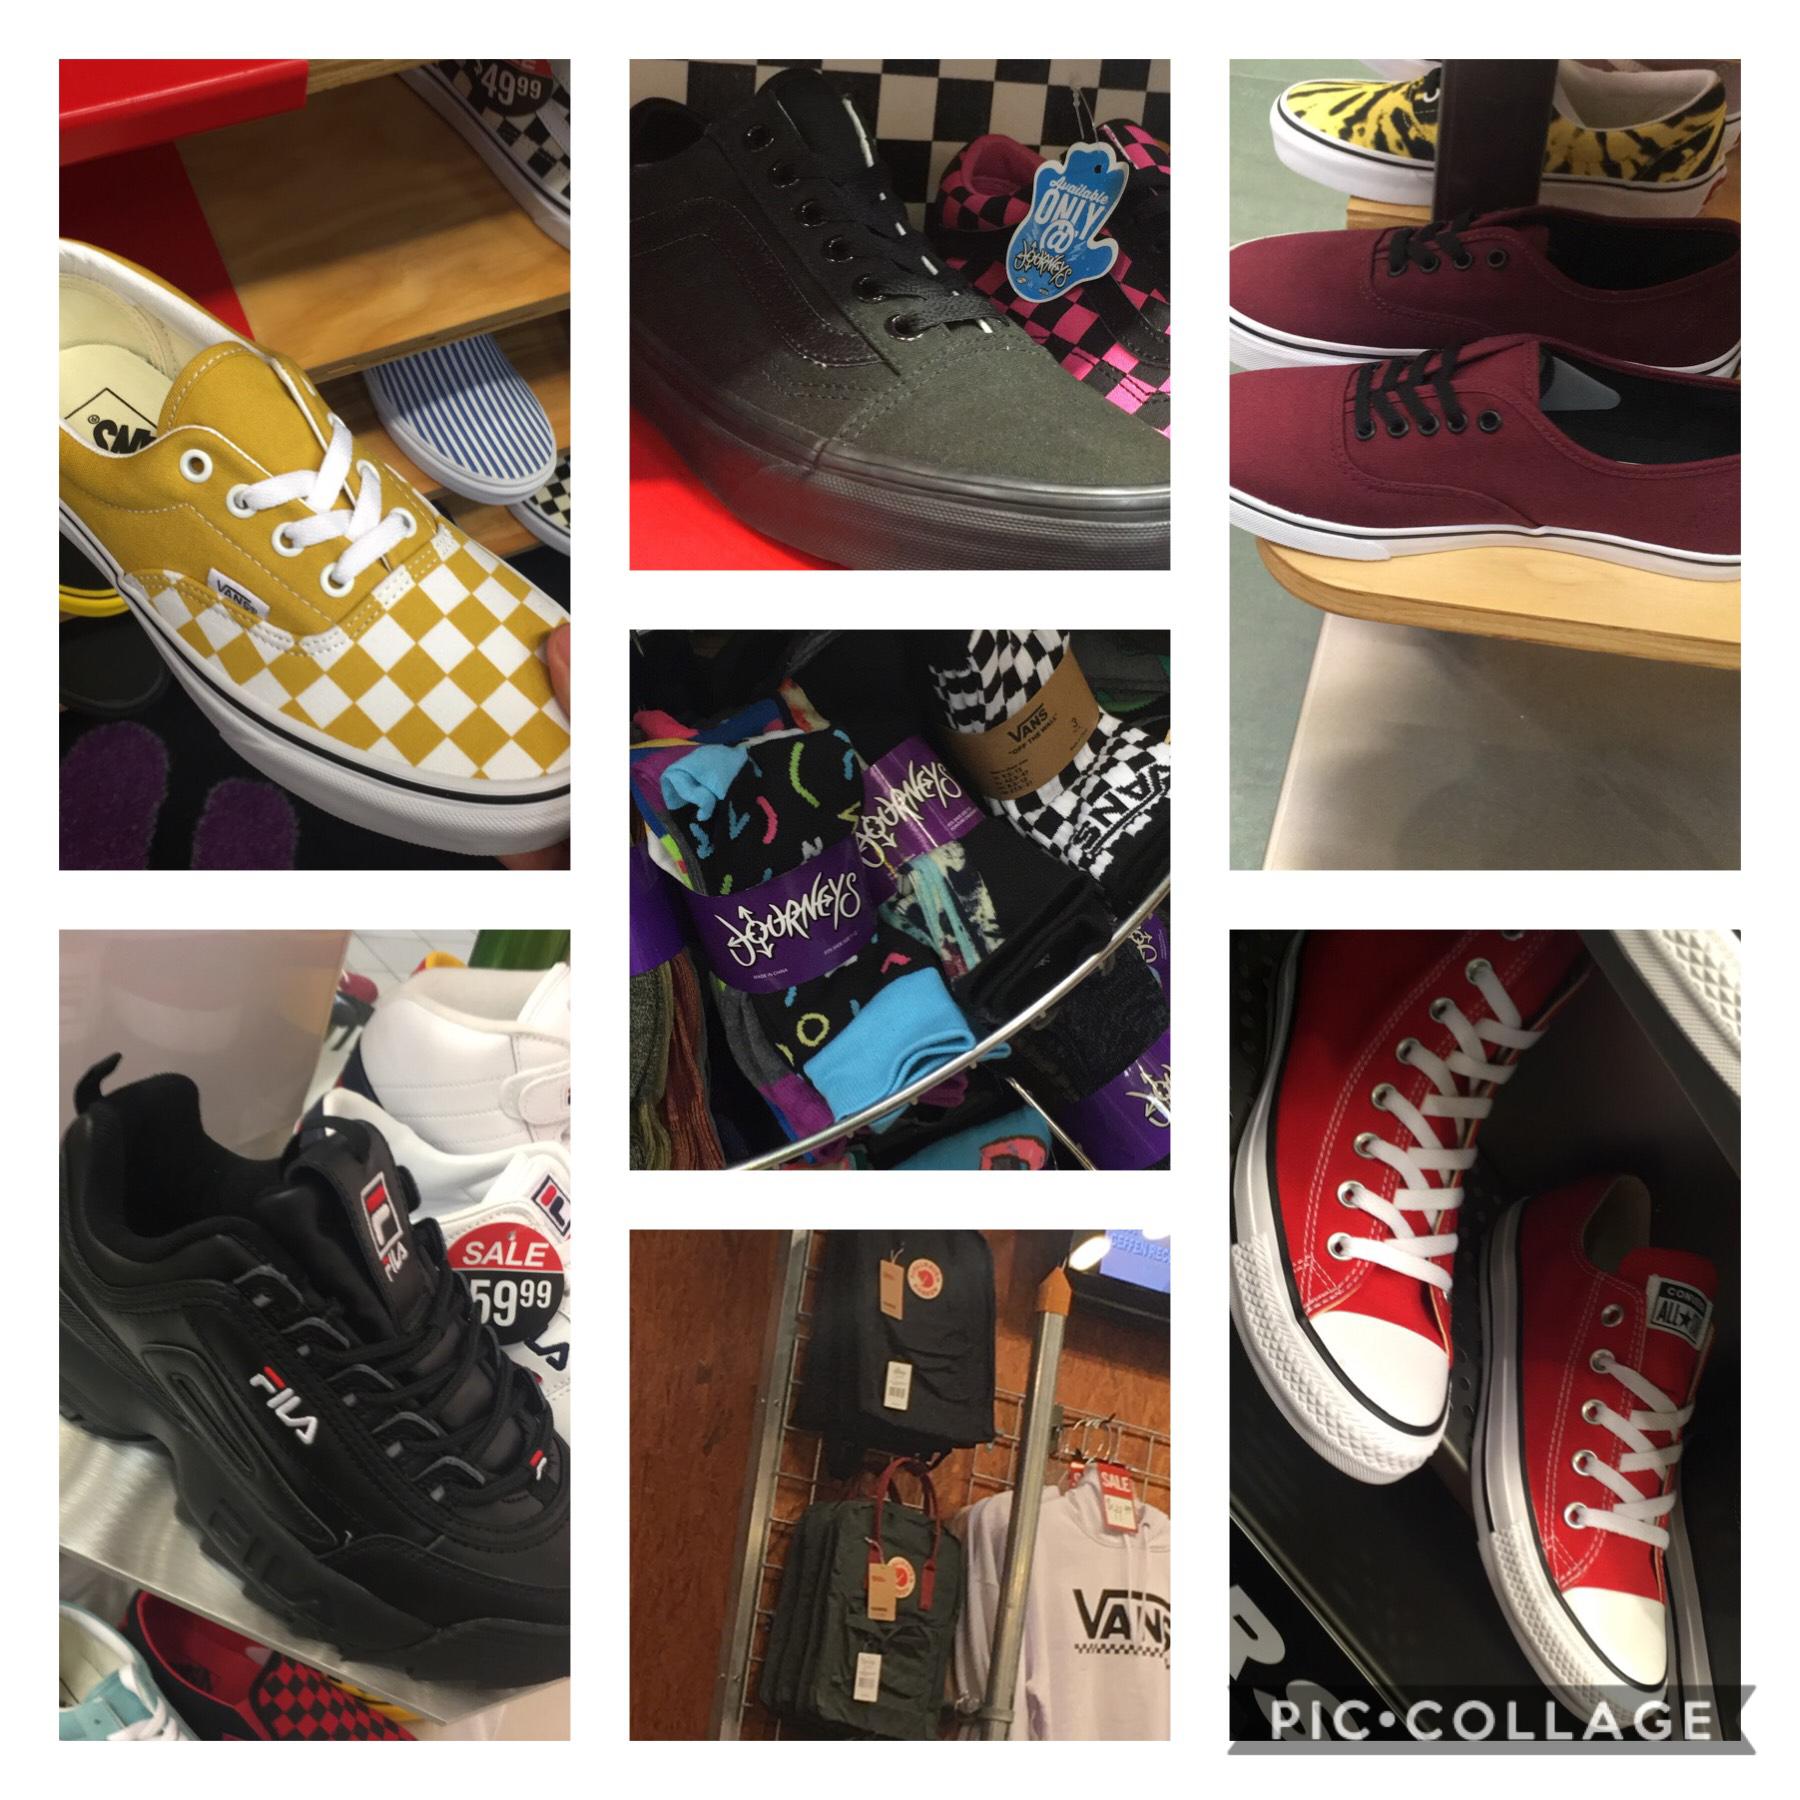 what shoes should i get? pls comment